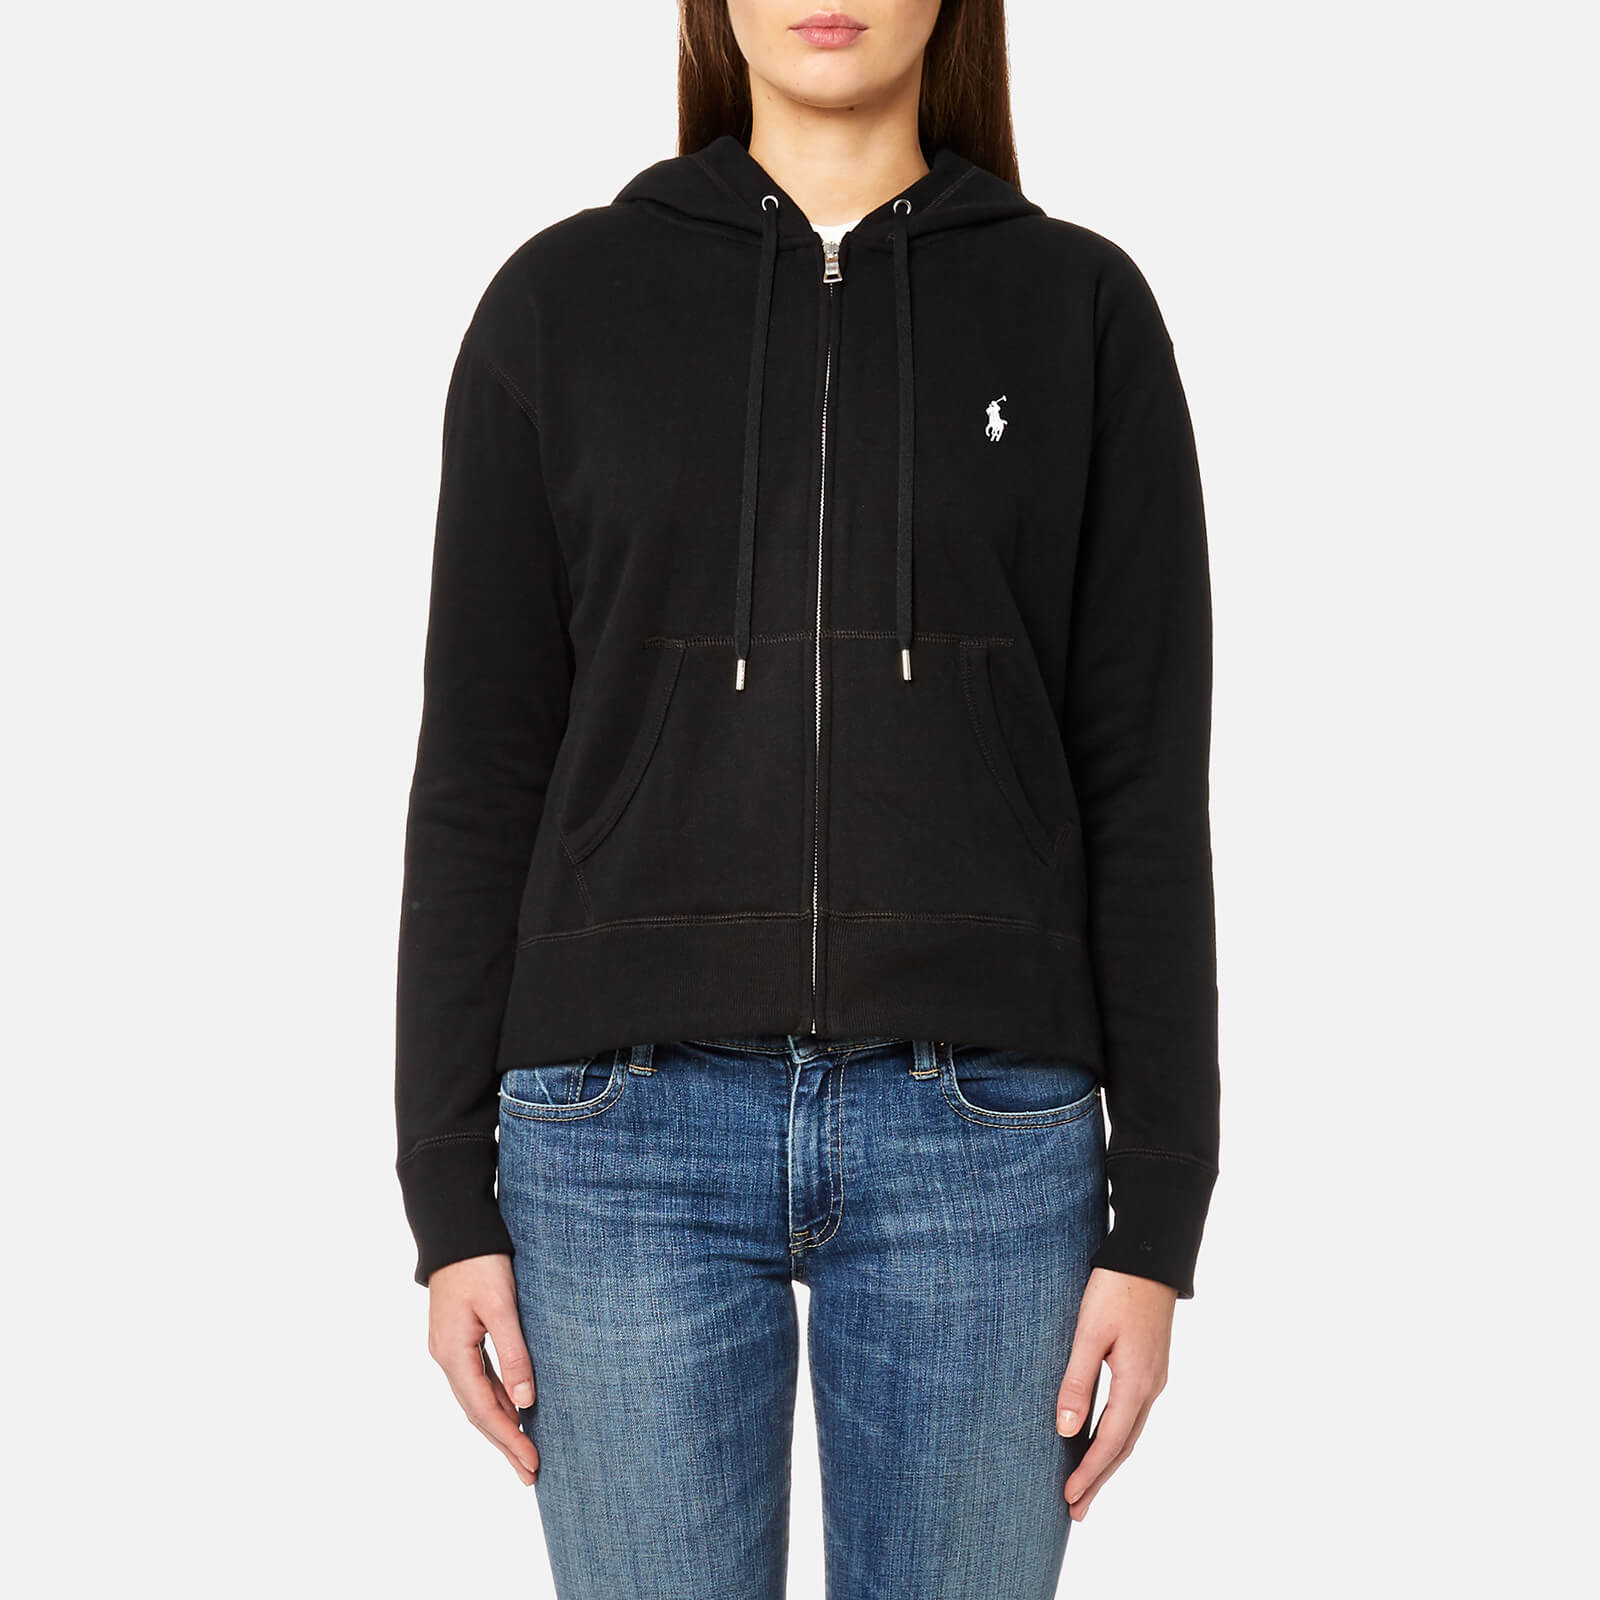 ralph lauren zip hoodie women's